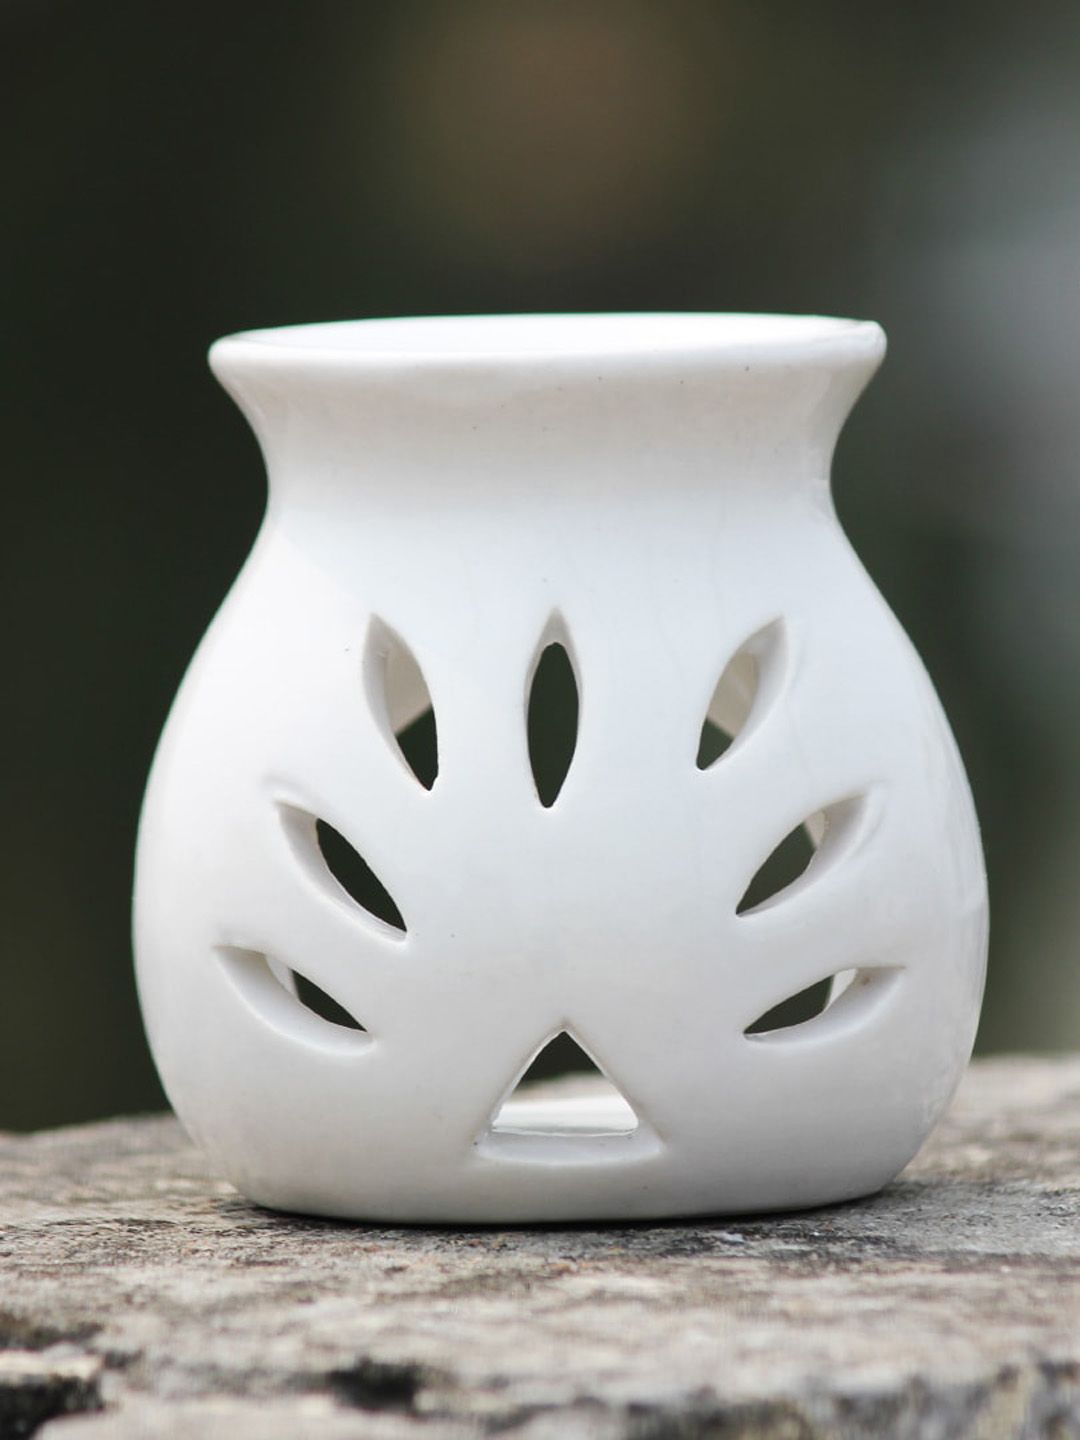 Brahmz White Ceramic Aroma Oil Diffuser Burner for Aromatherapy Price in India